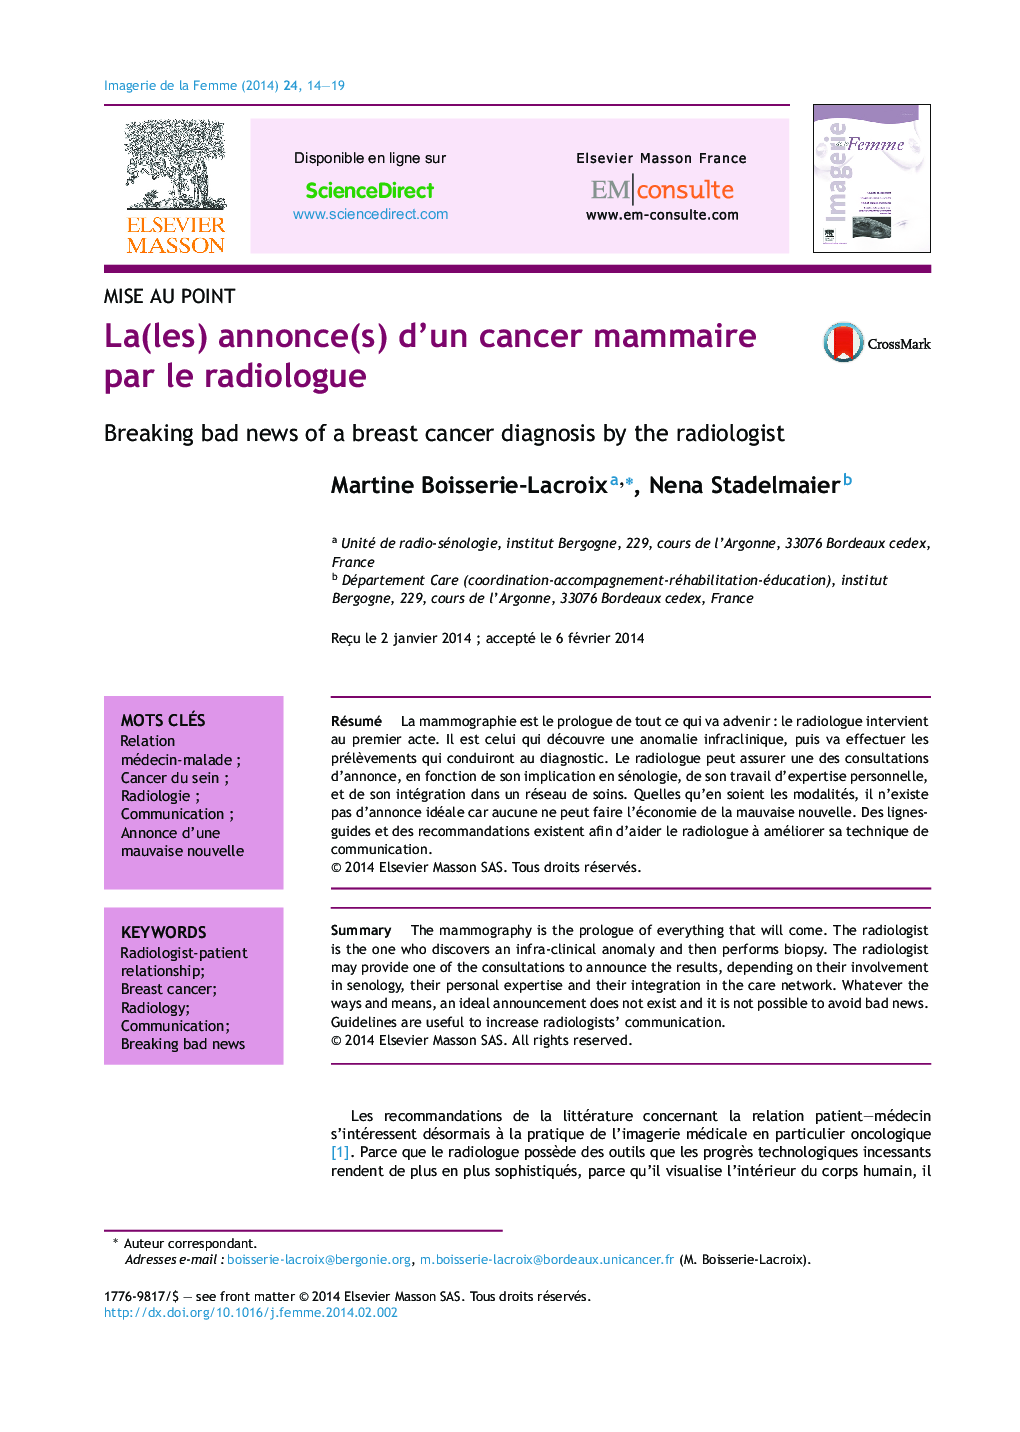 اعلام (ها) سرطان پستان توسط رادیولوژیست 